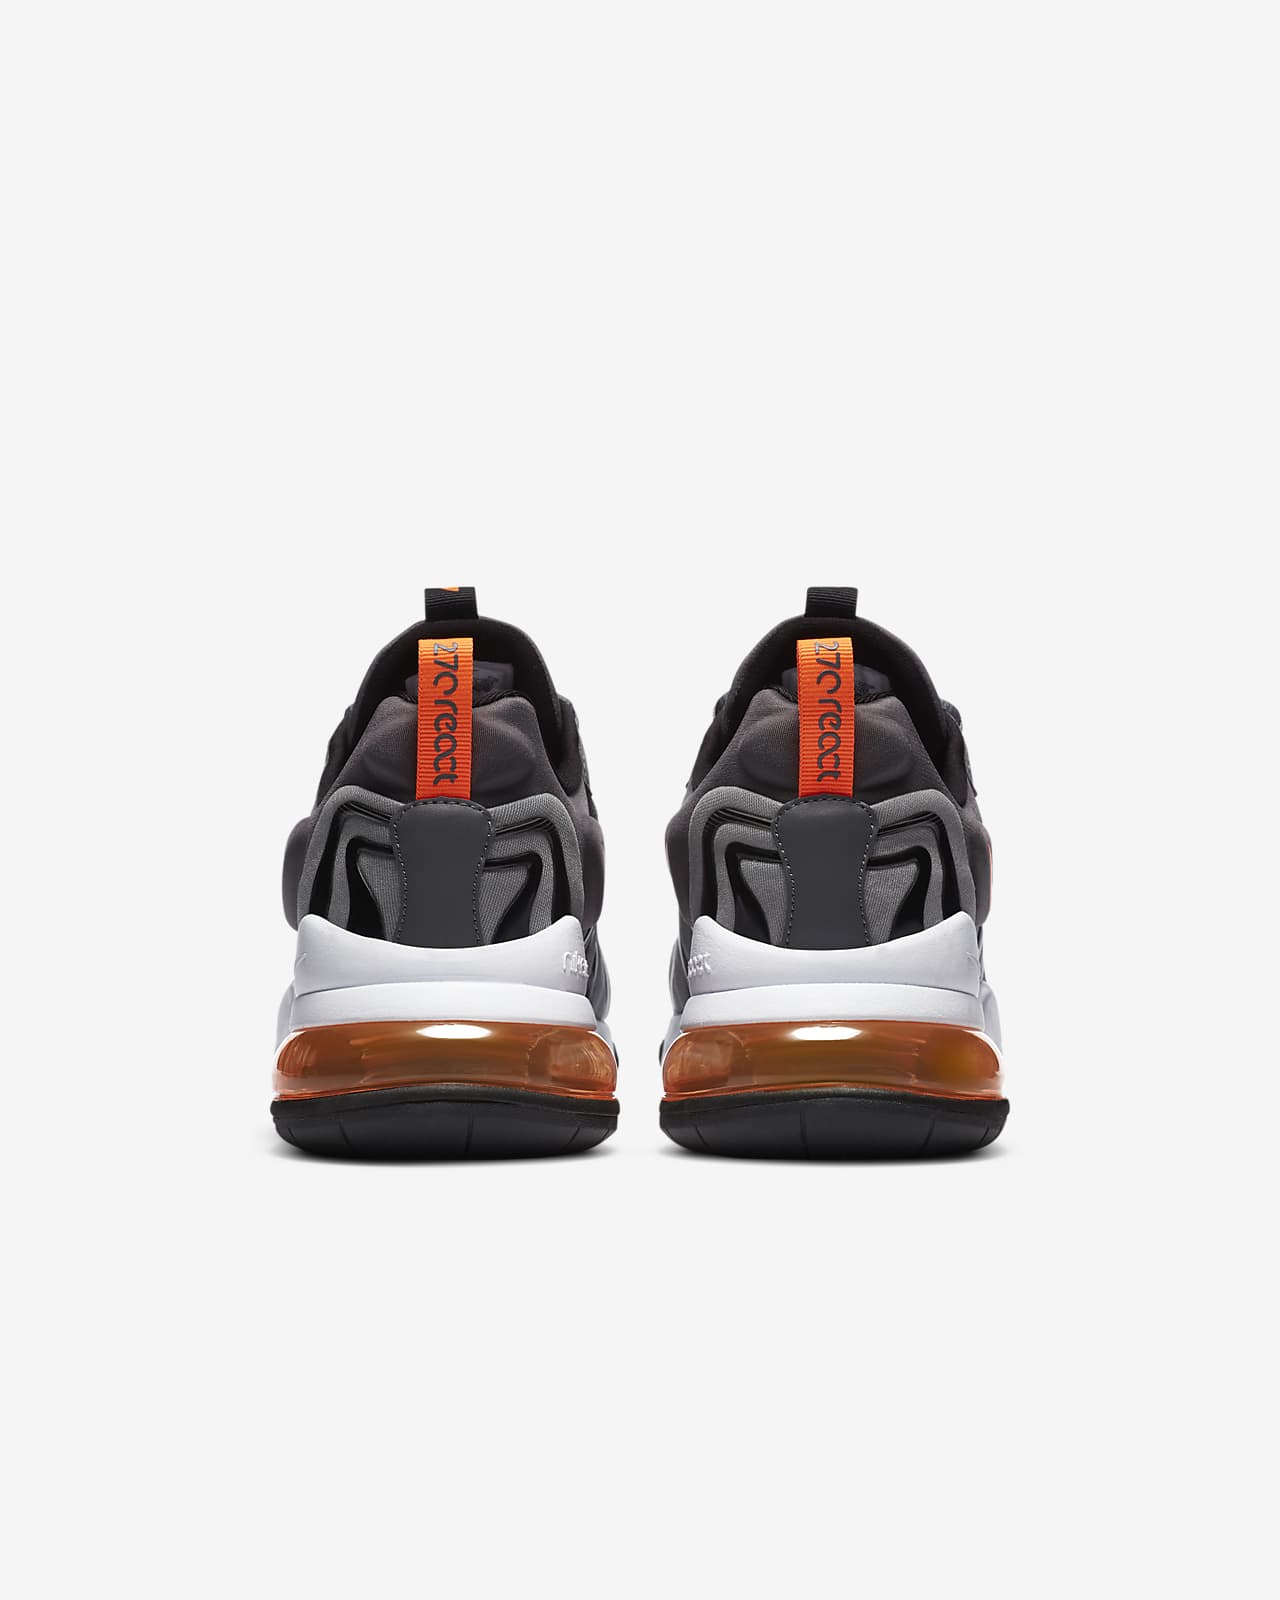 grey and orange air max 270